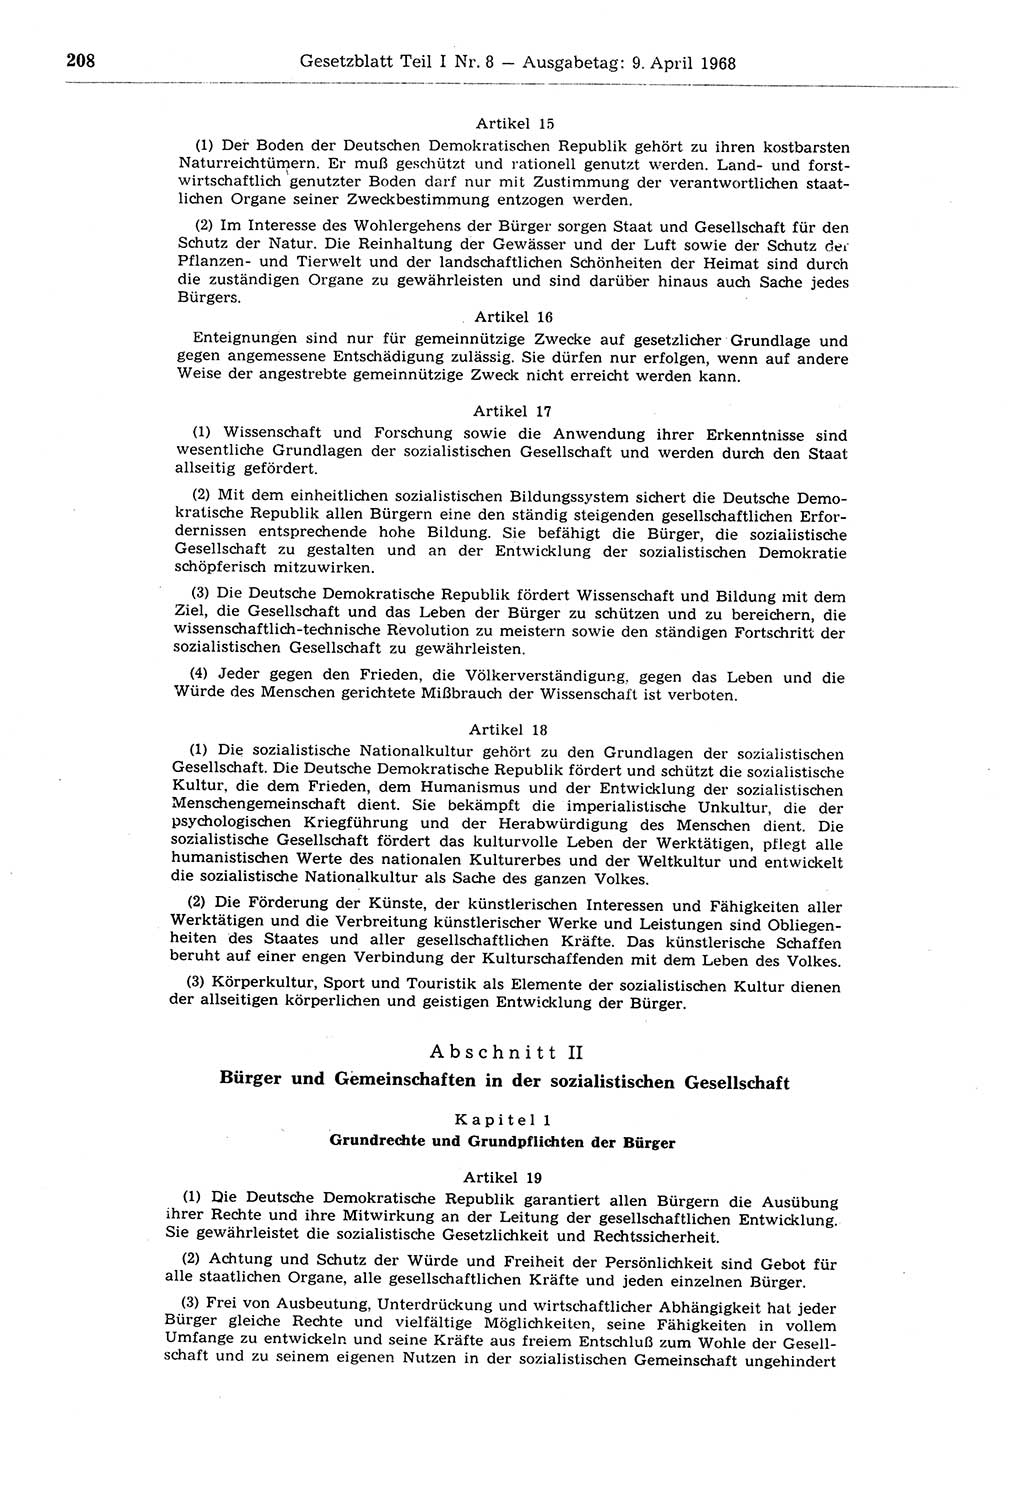 Gesetzblatt (GBl.) der Deutschen Demokratischen Republik (DDR) Teil Ⅰ 1968, Seite 208 (GBl. DDR Ⅰ 1968, S. 208)